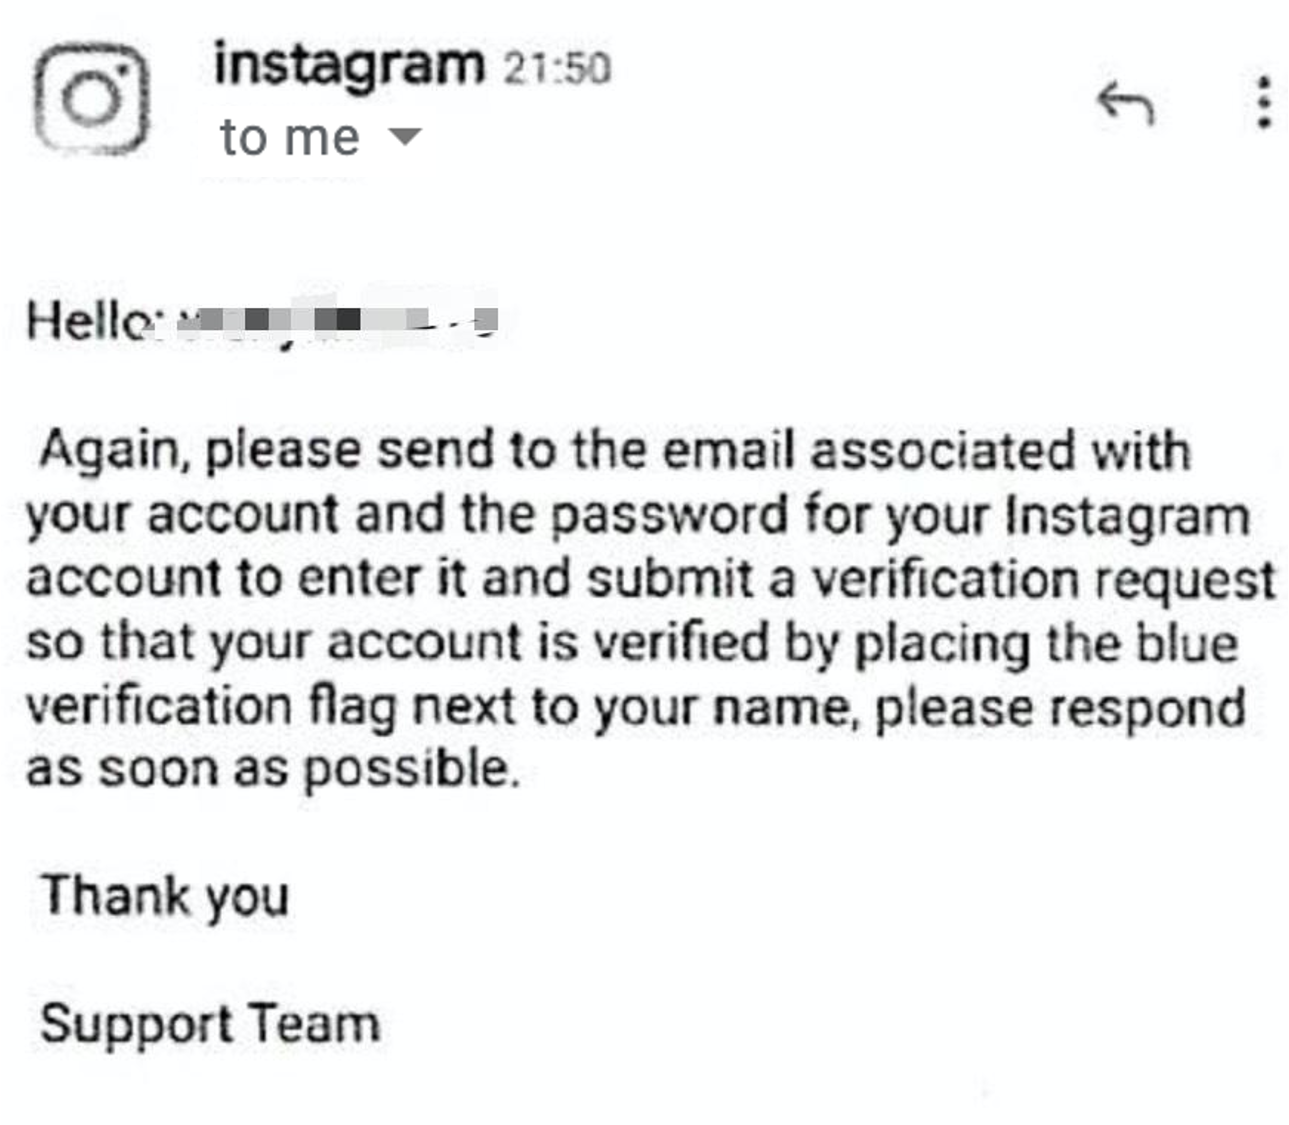 instagram blue check phishing scam